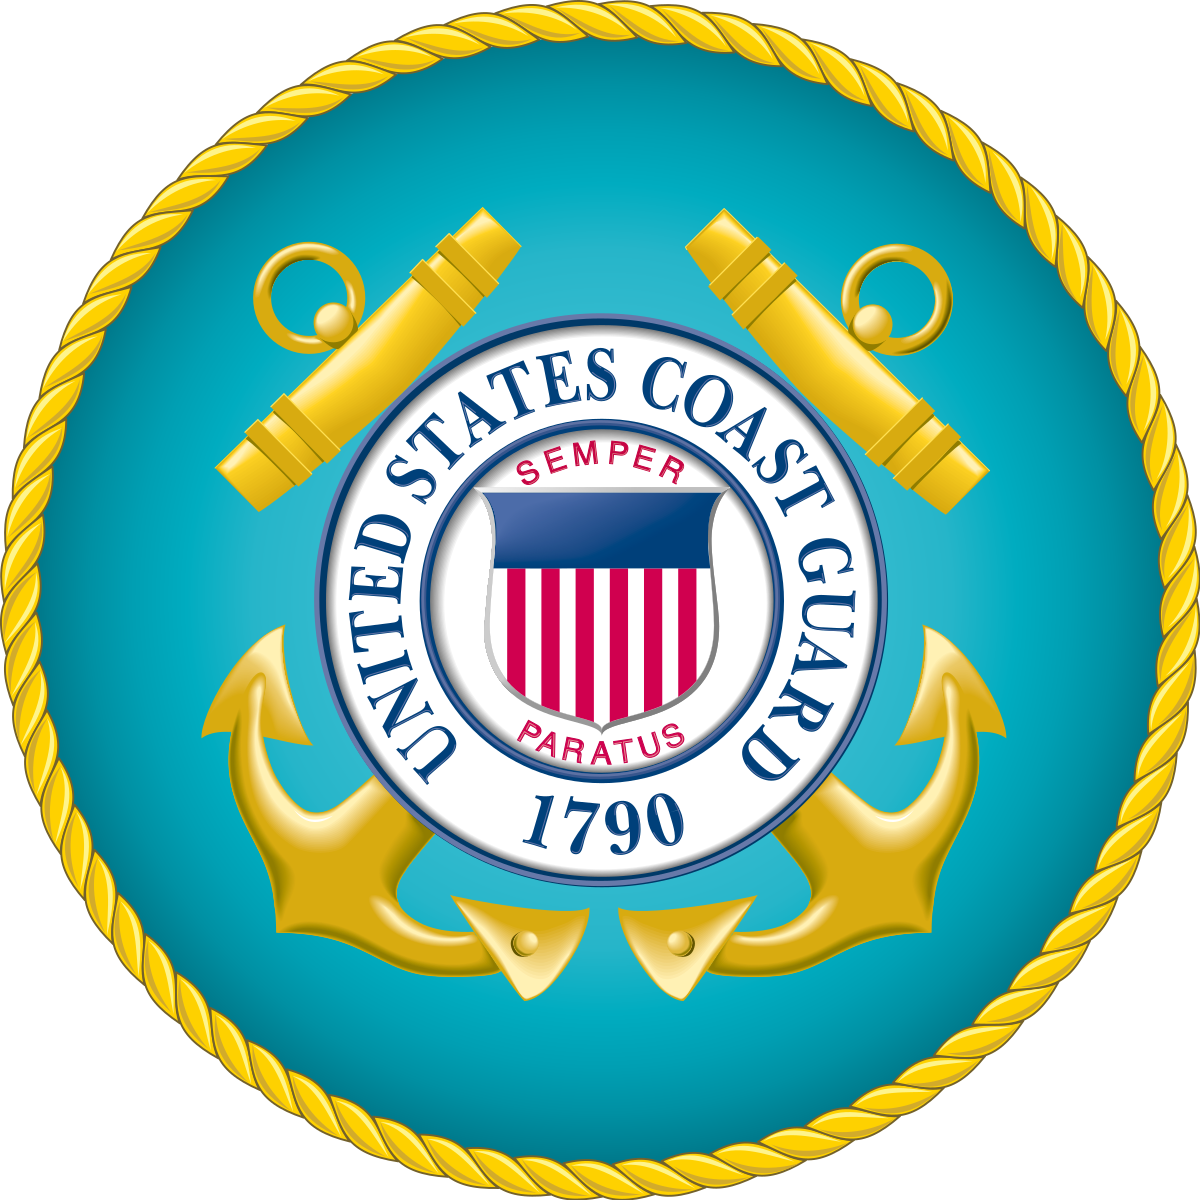 US Coast Guard Emblem